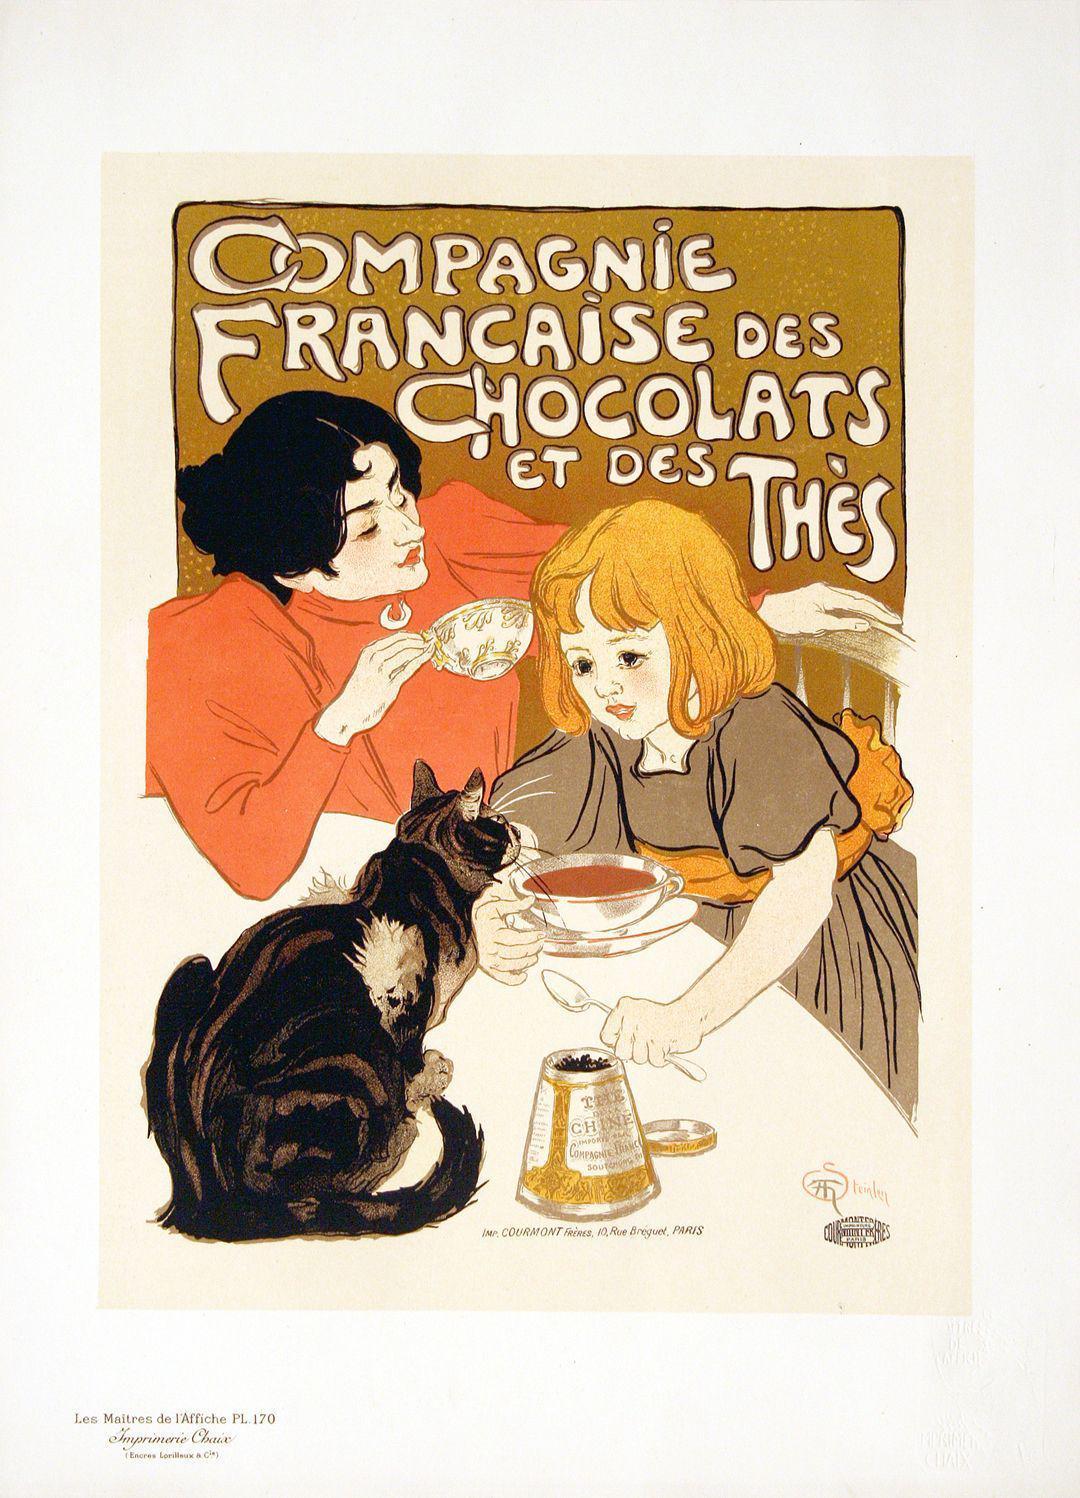 Original Maitres de L'Affiche Poster PL 170 - Compagnie Francaise des Chocolats et des Thes by The'ophile Steinlen